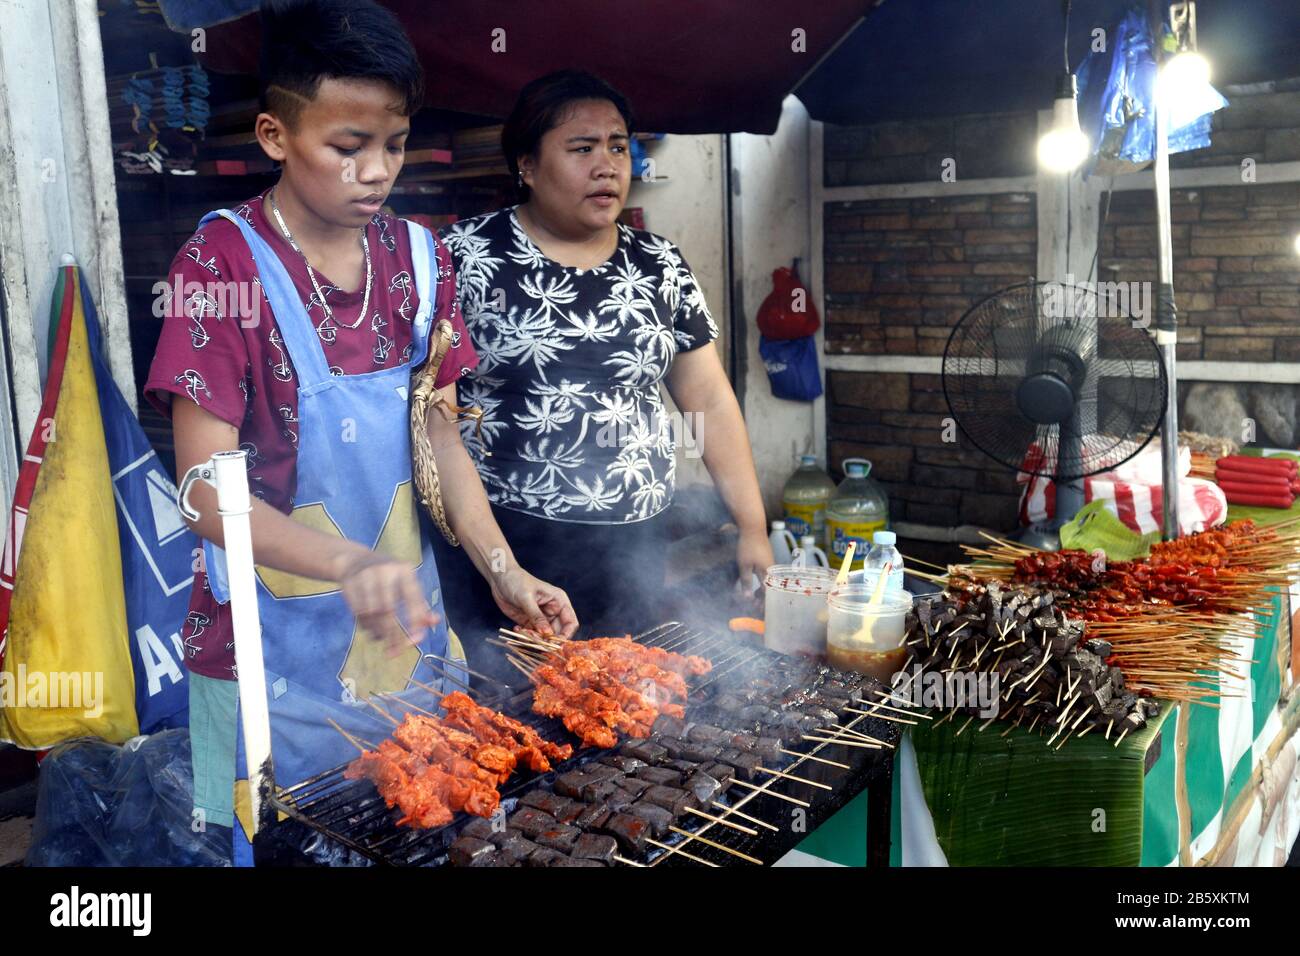 Antipolo, Rizal, Philippines - 24 février 2020: Le vendeur de nourriture de rue à son étalage de nourriture vend des innards de porc et de poulet grillés dans des bâtonnets de barbecue. Banque D'Images